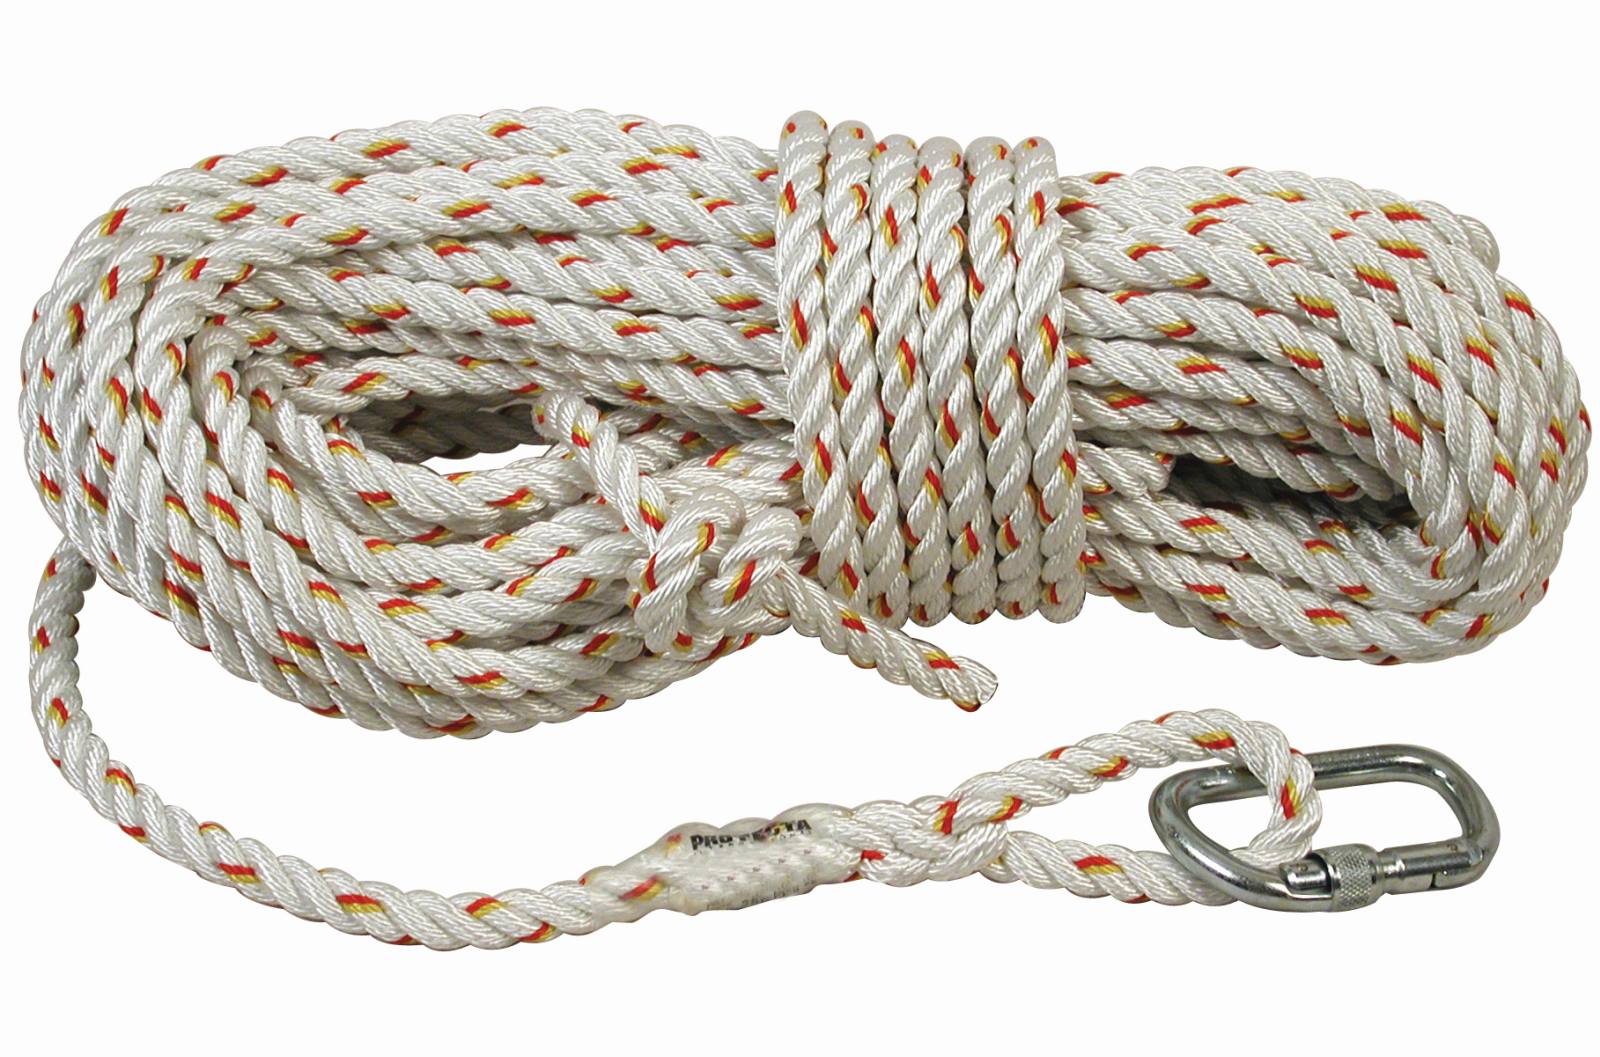 3M PROTECTA Seil für mitlaufendes Auffanggerät Cobra, Länge: 40 m, gedrehtes Seil 14 mm , AJ501 Karabiner Öffnungsweite 17 mm, 40,0 m